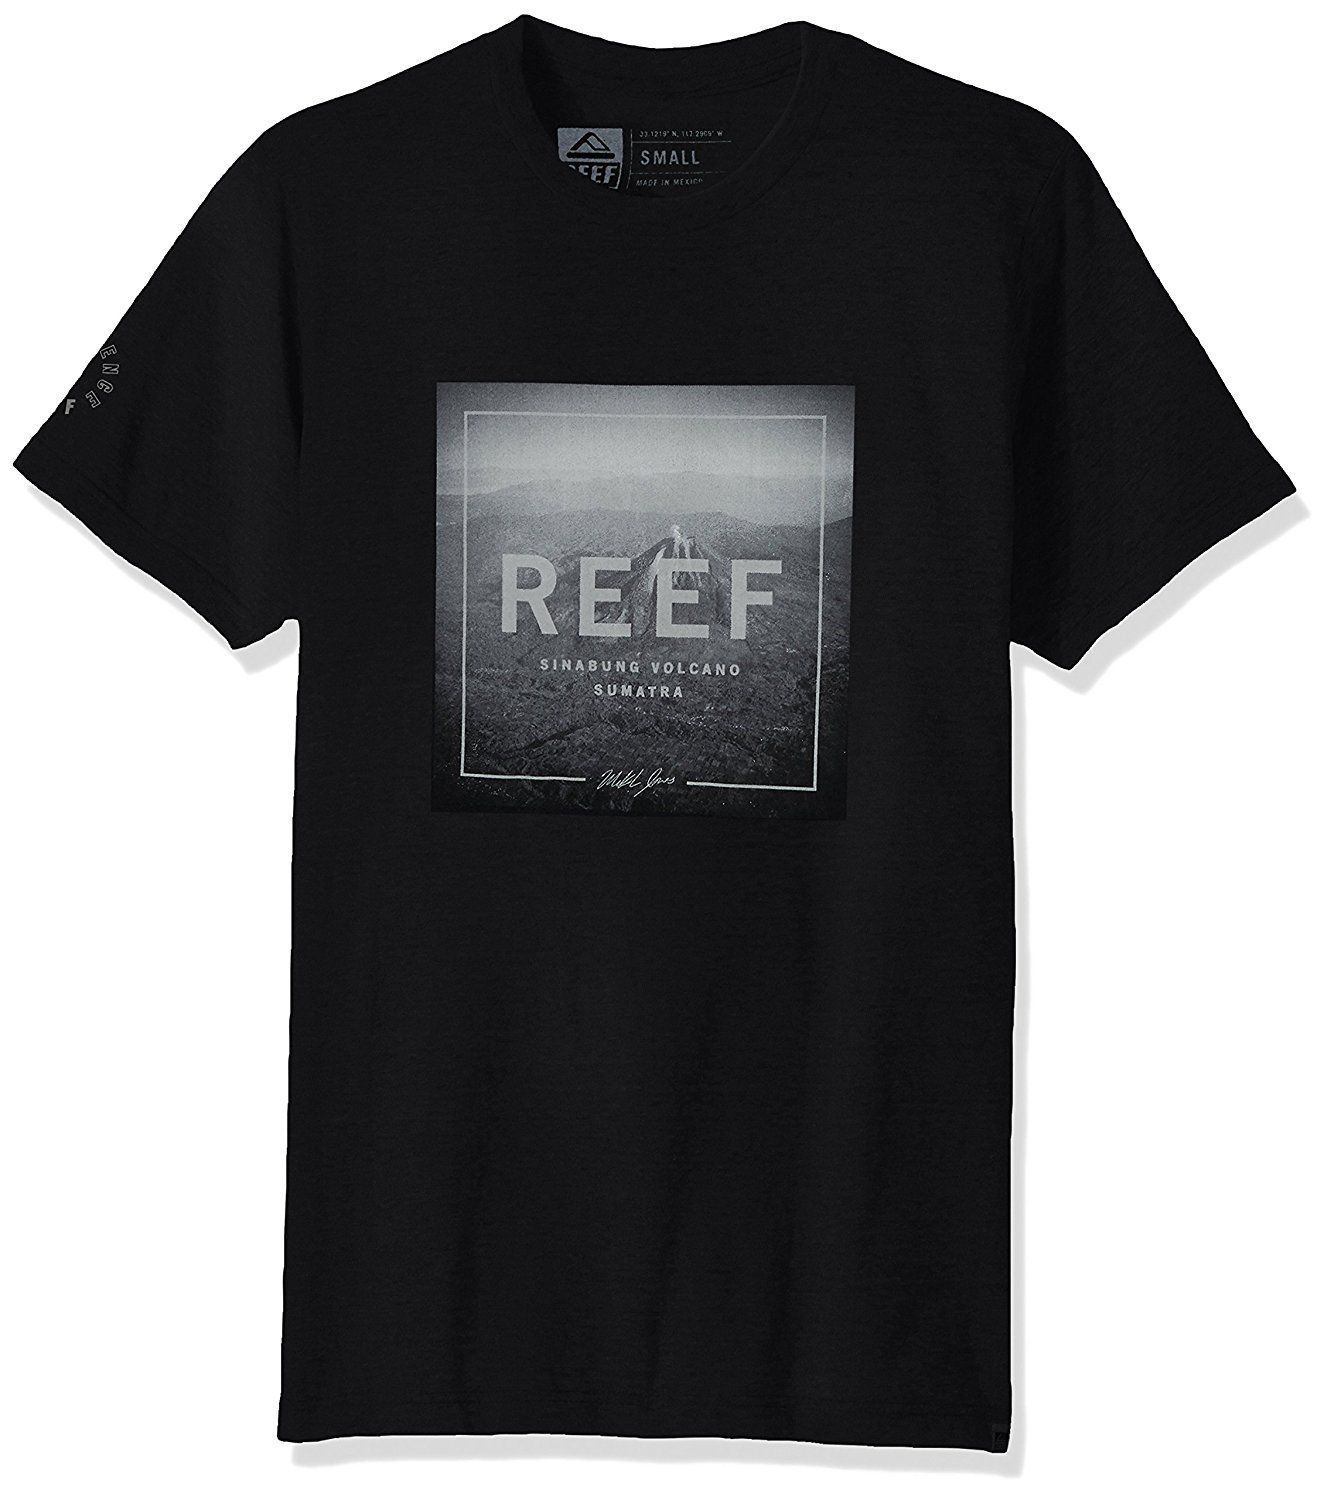 REEF HOMBRE CAMISETA 2018 Camisetas de algodón de manga corta Hombre Ropa